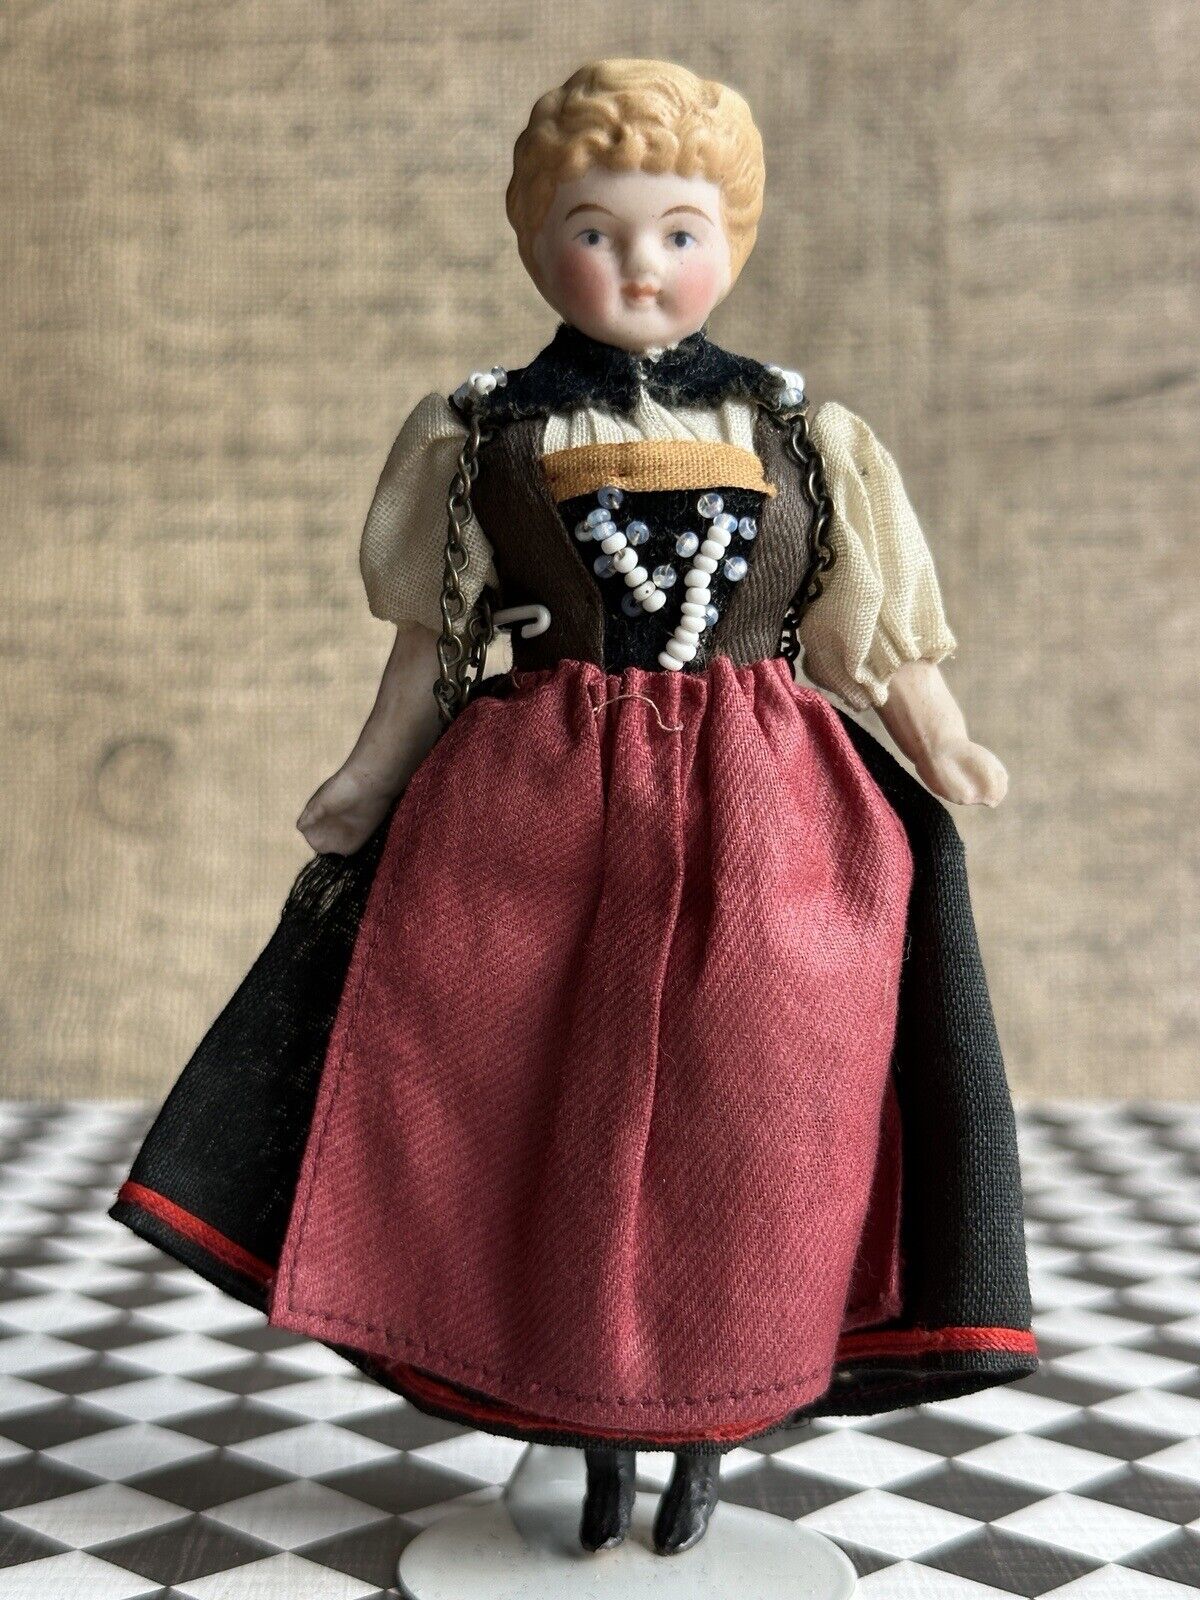 Antique German Miniature Dollhouse 5.75” Bisque Head Parian Girl Doll